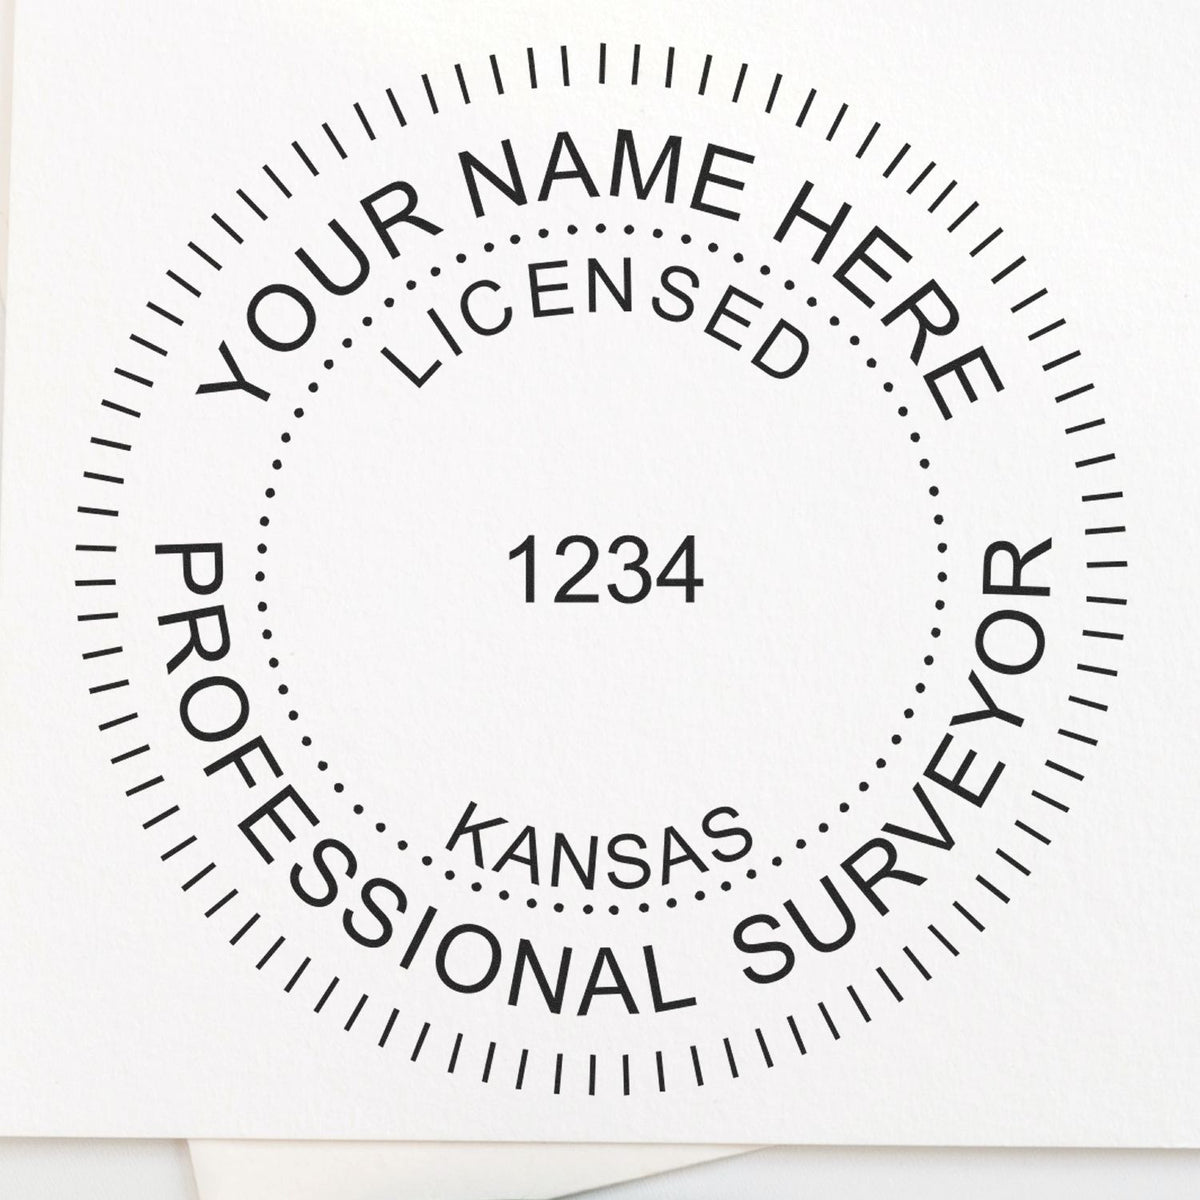 Kansas Land Surveyor Seal Stamp In Use Photo